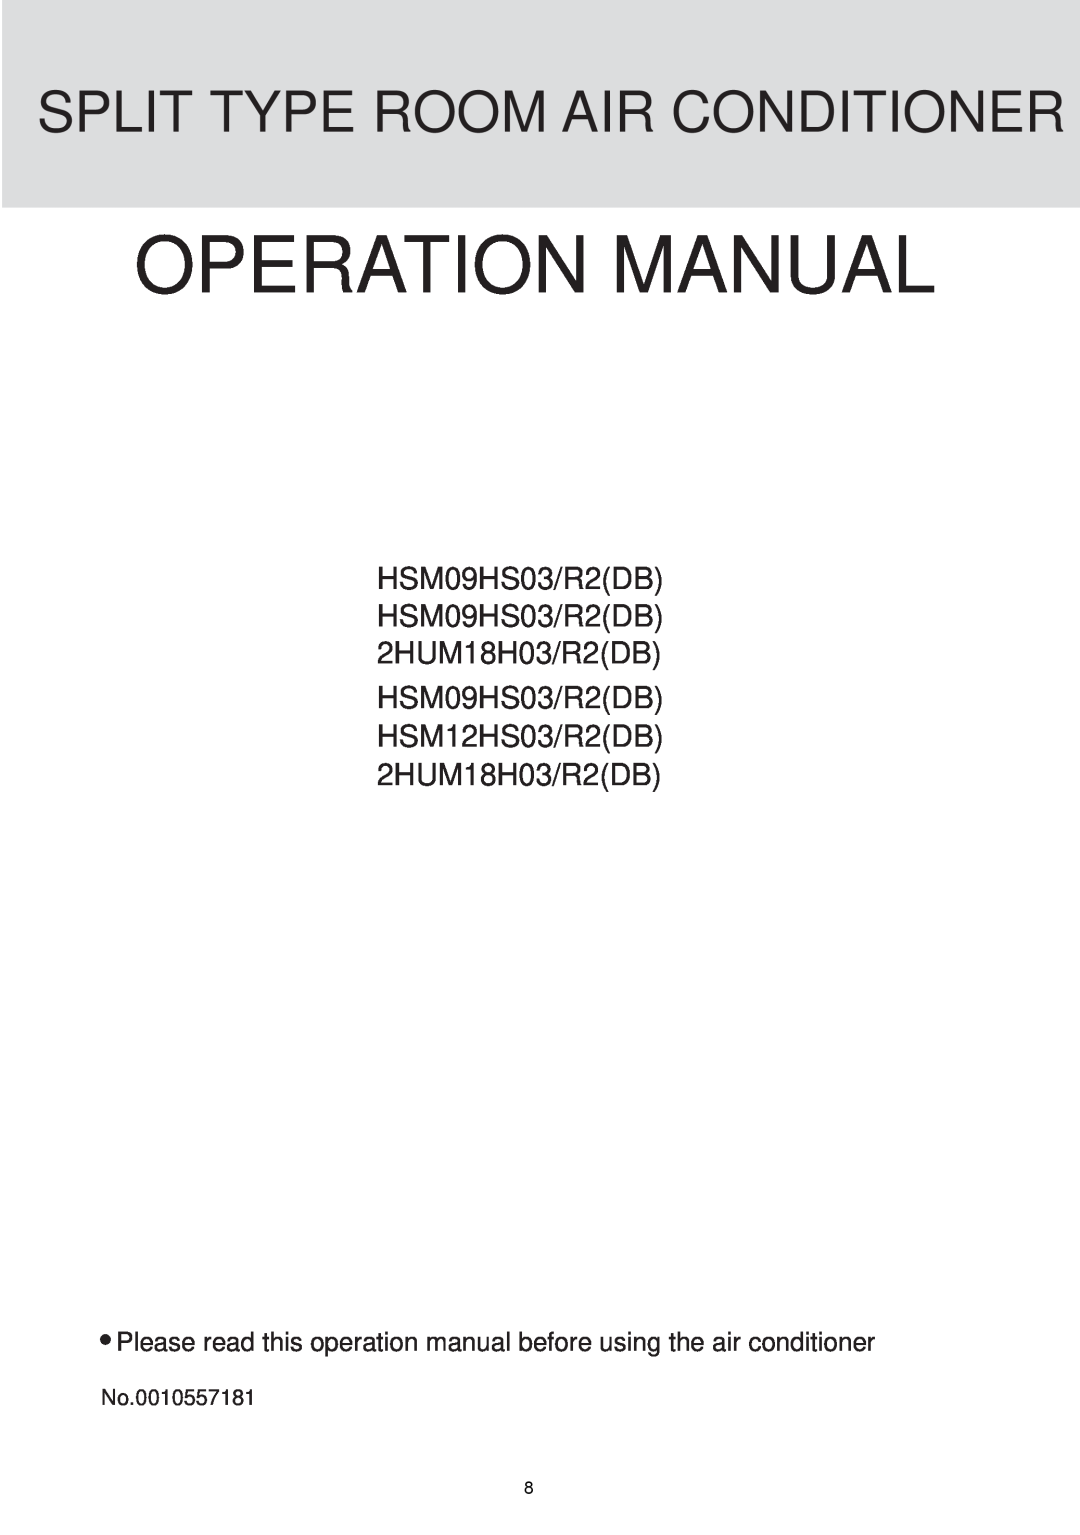 Haier HSU-09R04, HSU-12R04, HSU-18R04, HSU-24R04 operation manual HSM09HS03/R2DB HSM09HS03/R2DB 2HUM18H03/R2DB 